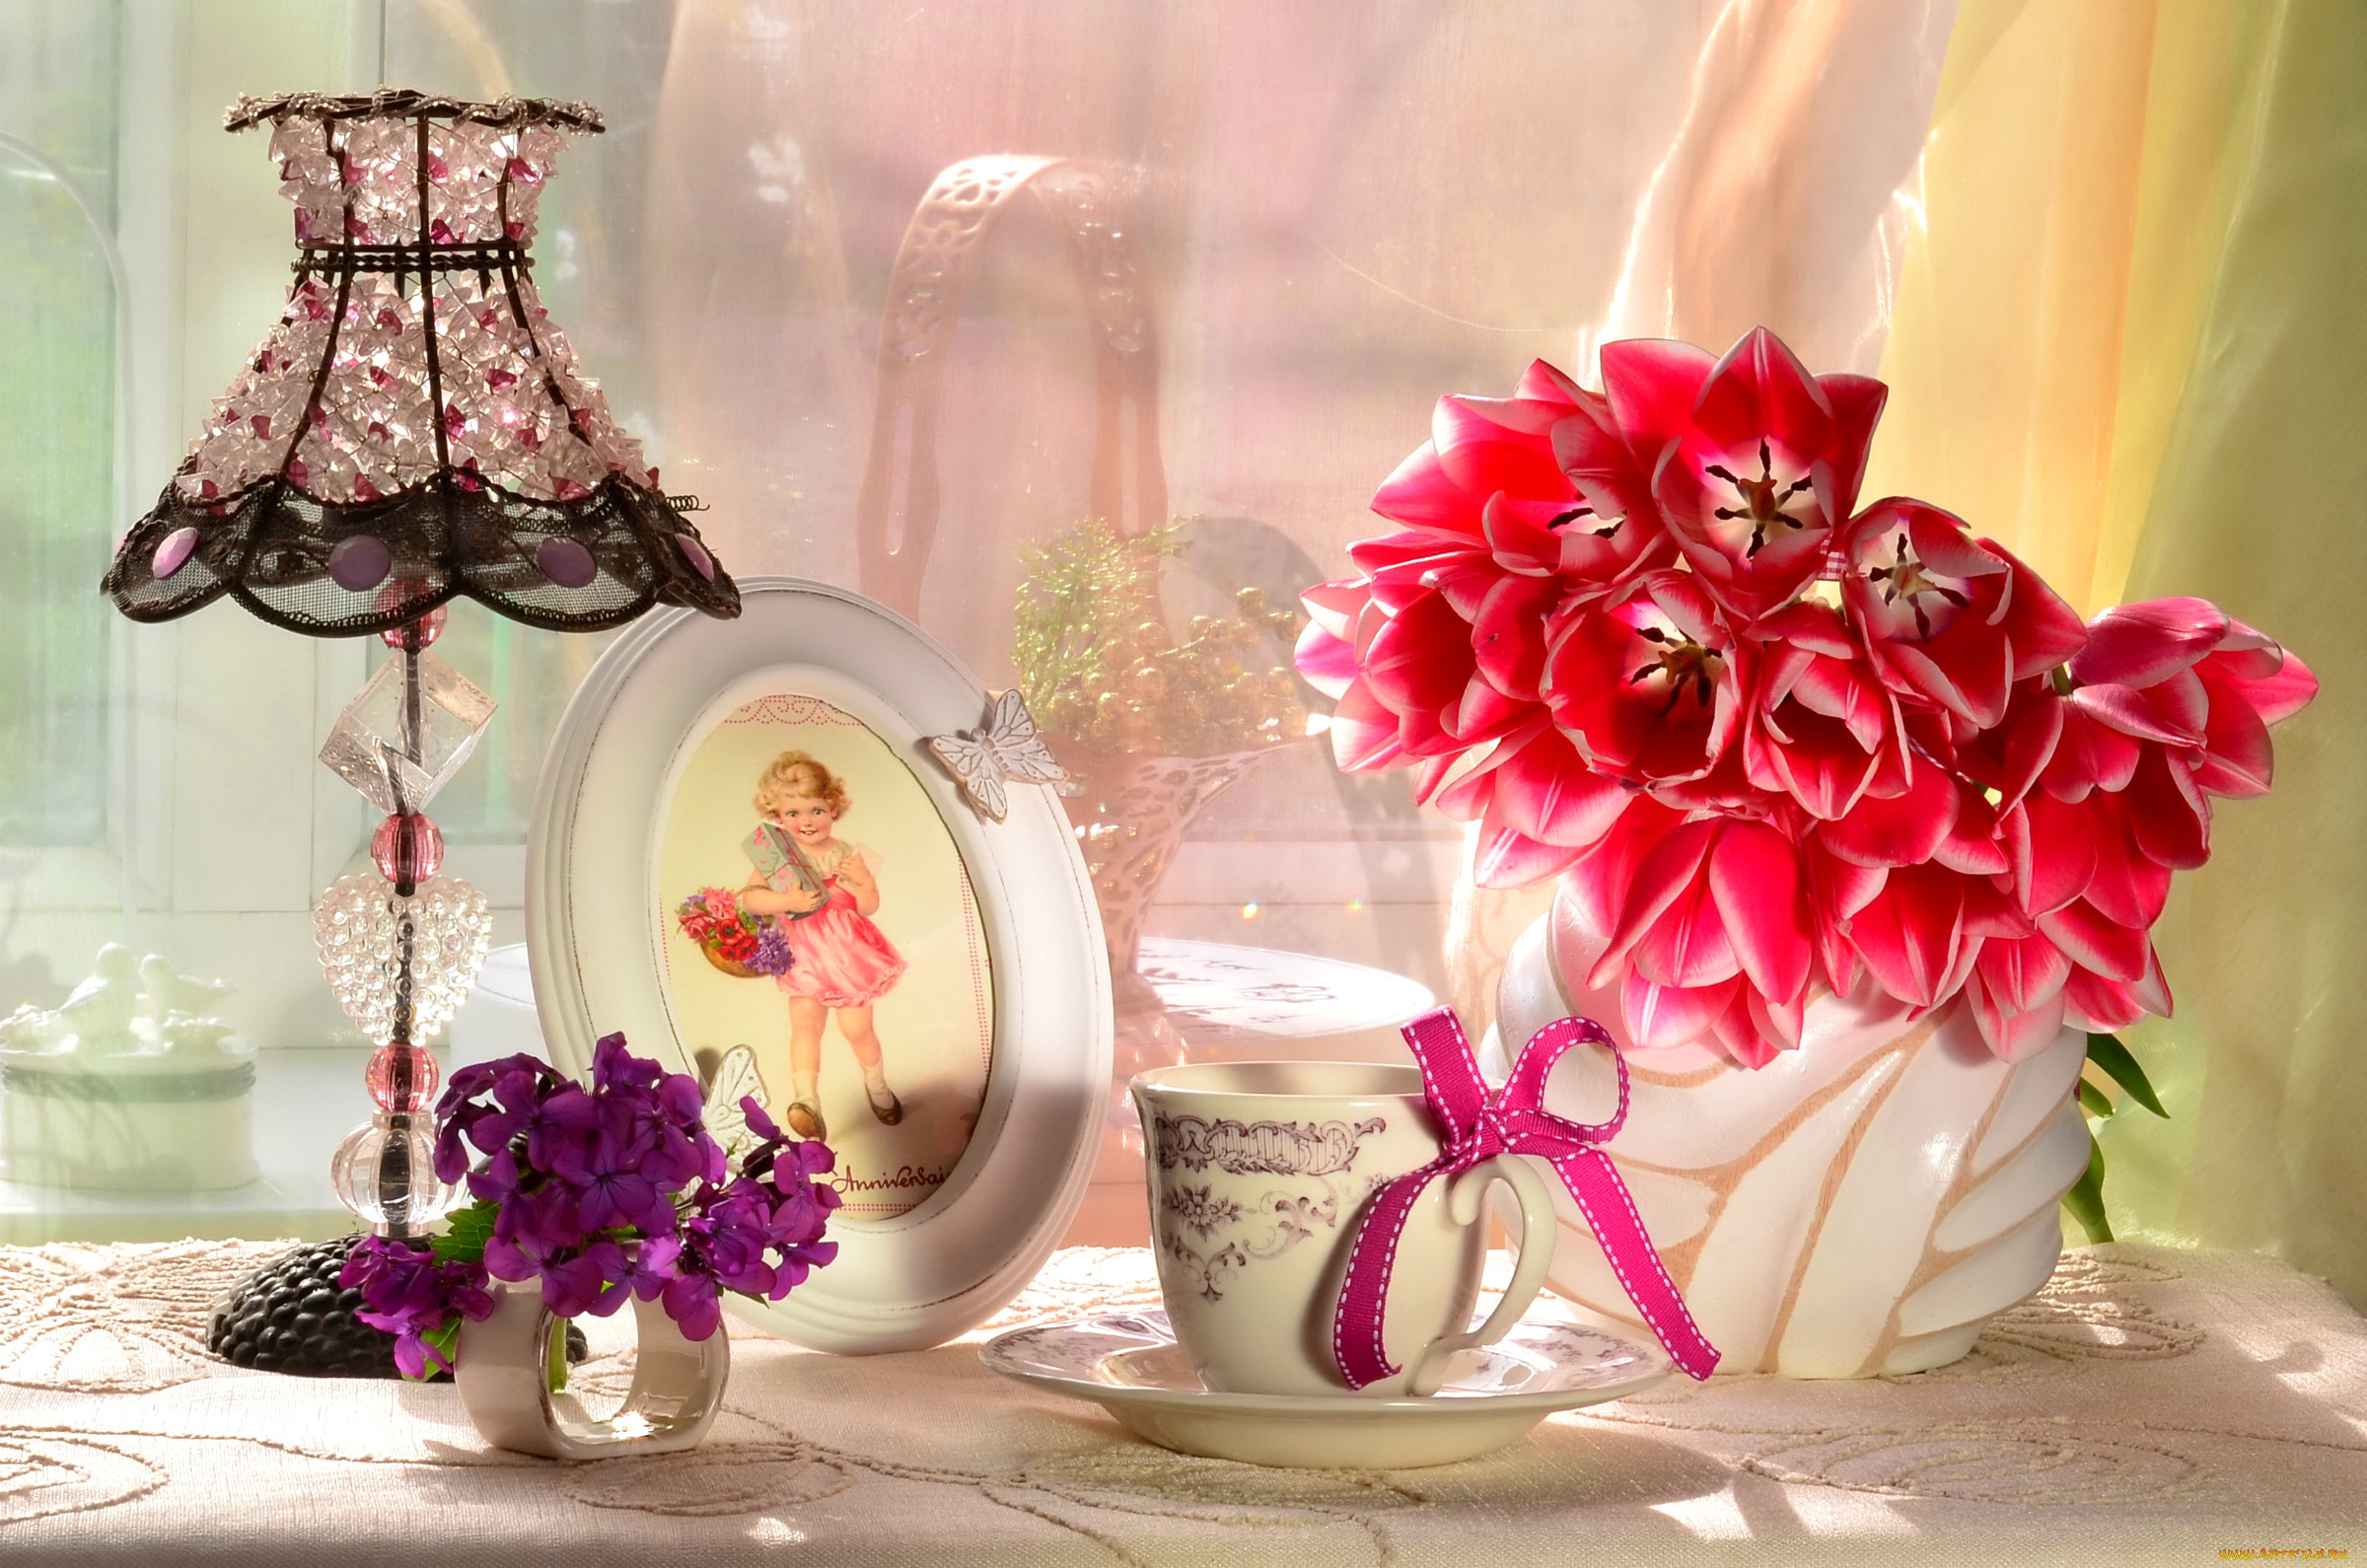 разное, предметы, быта, чашка, букет, цветы, тюльпаны, абажур, лампа, девочка, рамка, бантик